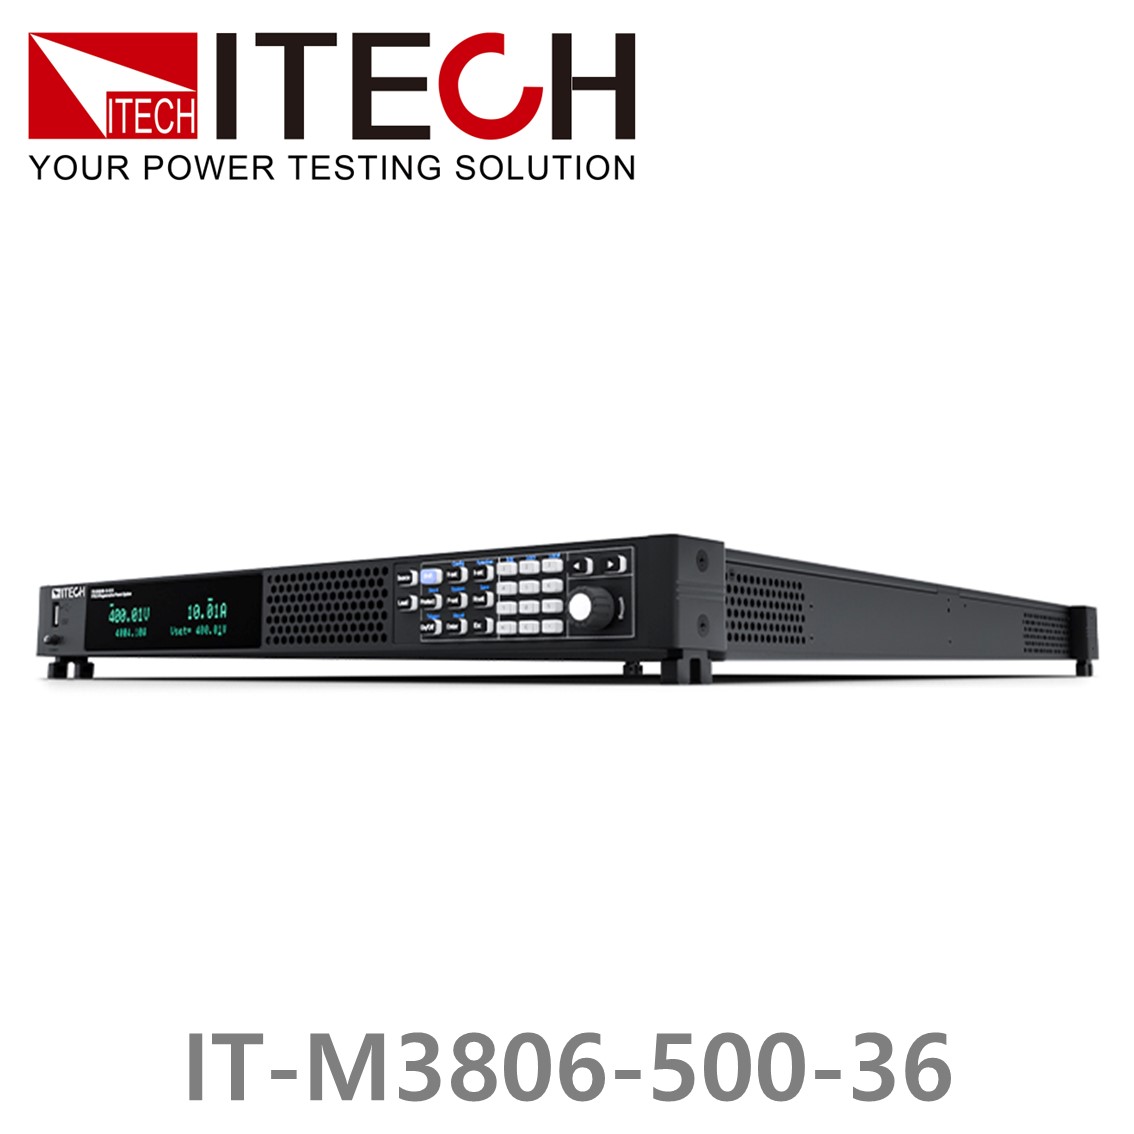 [ ITECH ] IT-M3806-500-36, 500V/36A/6000W DC 전자로드, DC전자부하기